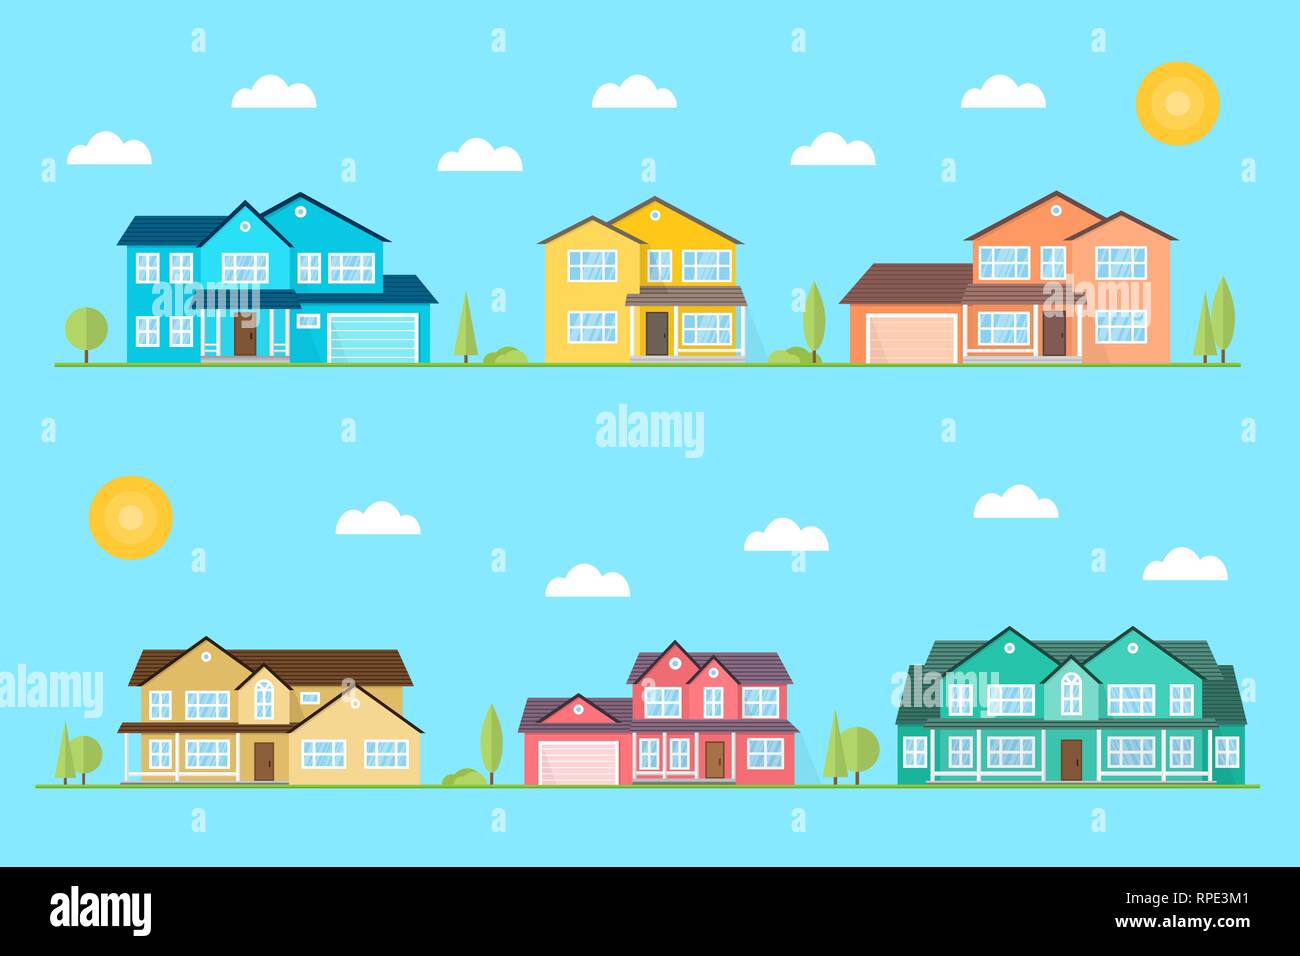 Viertel mit Häusern auf dem blauen Hintergrund dargestellt. Vektor flachbild Symbol suburban amerikanische Häuser Tag für Web Design und Application Interface, auch nützlich für Infografiken. Vector Illustration. Stock Vektor